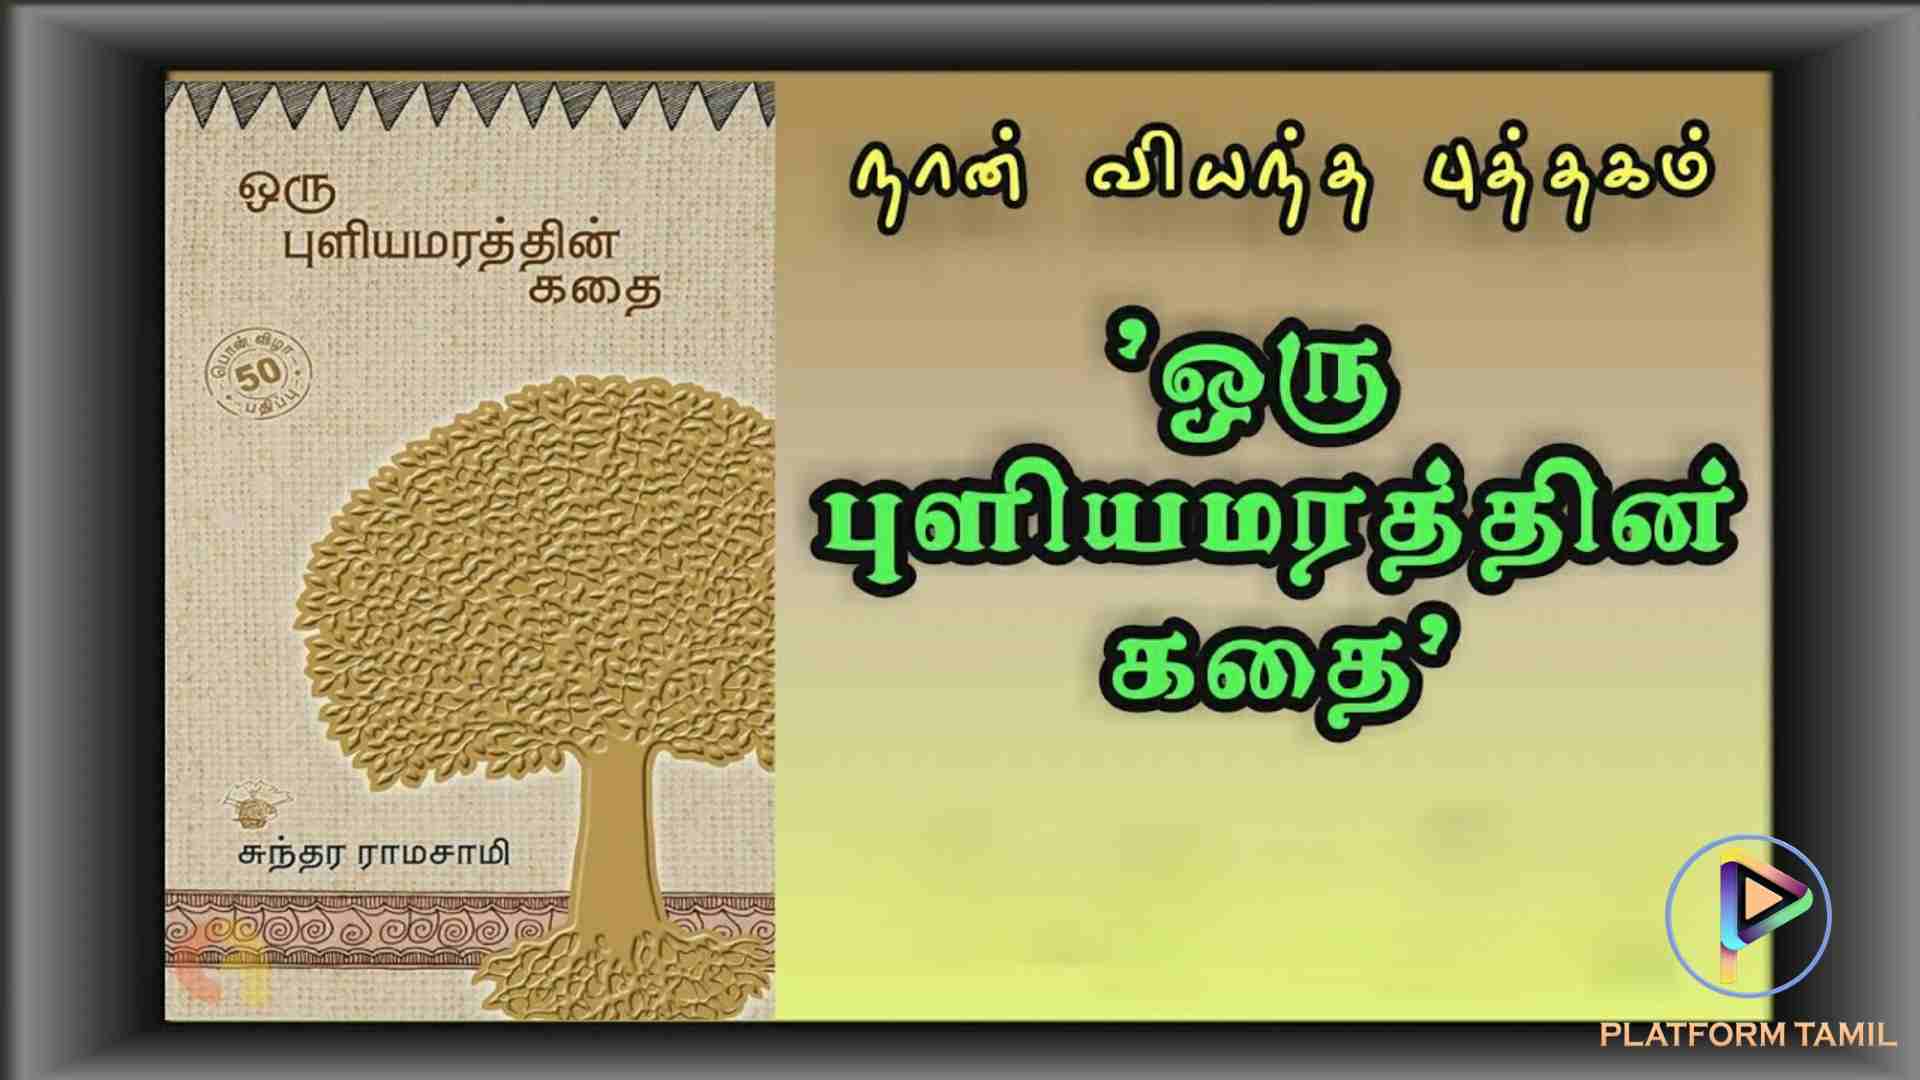 ஒரு புளியமரத்தின் கதை (Oru Puliyamarathin Kathai) - Platform Tamil